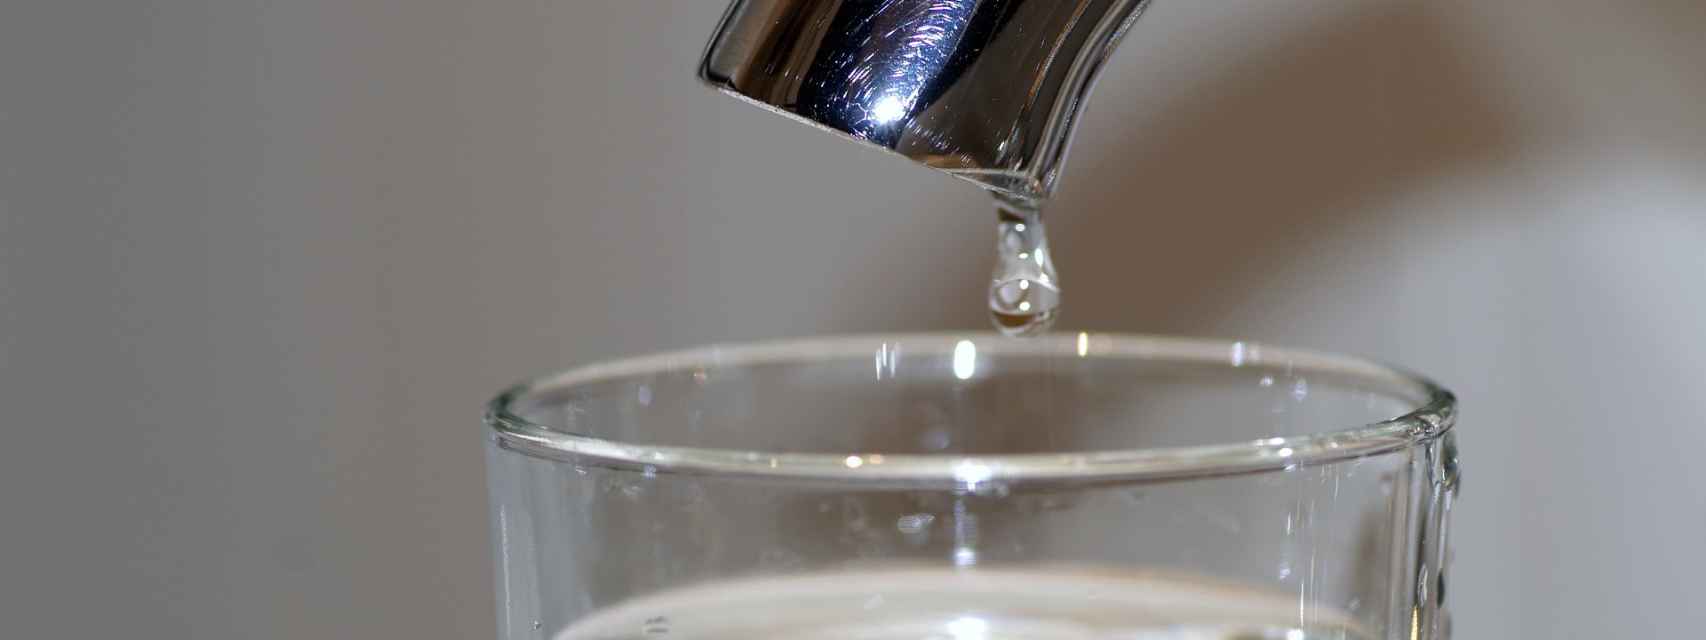 La gran mentira de las jarras tipo Brita: El agua no es más sana